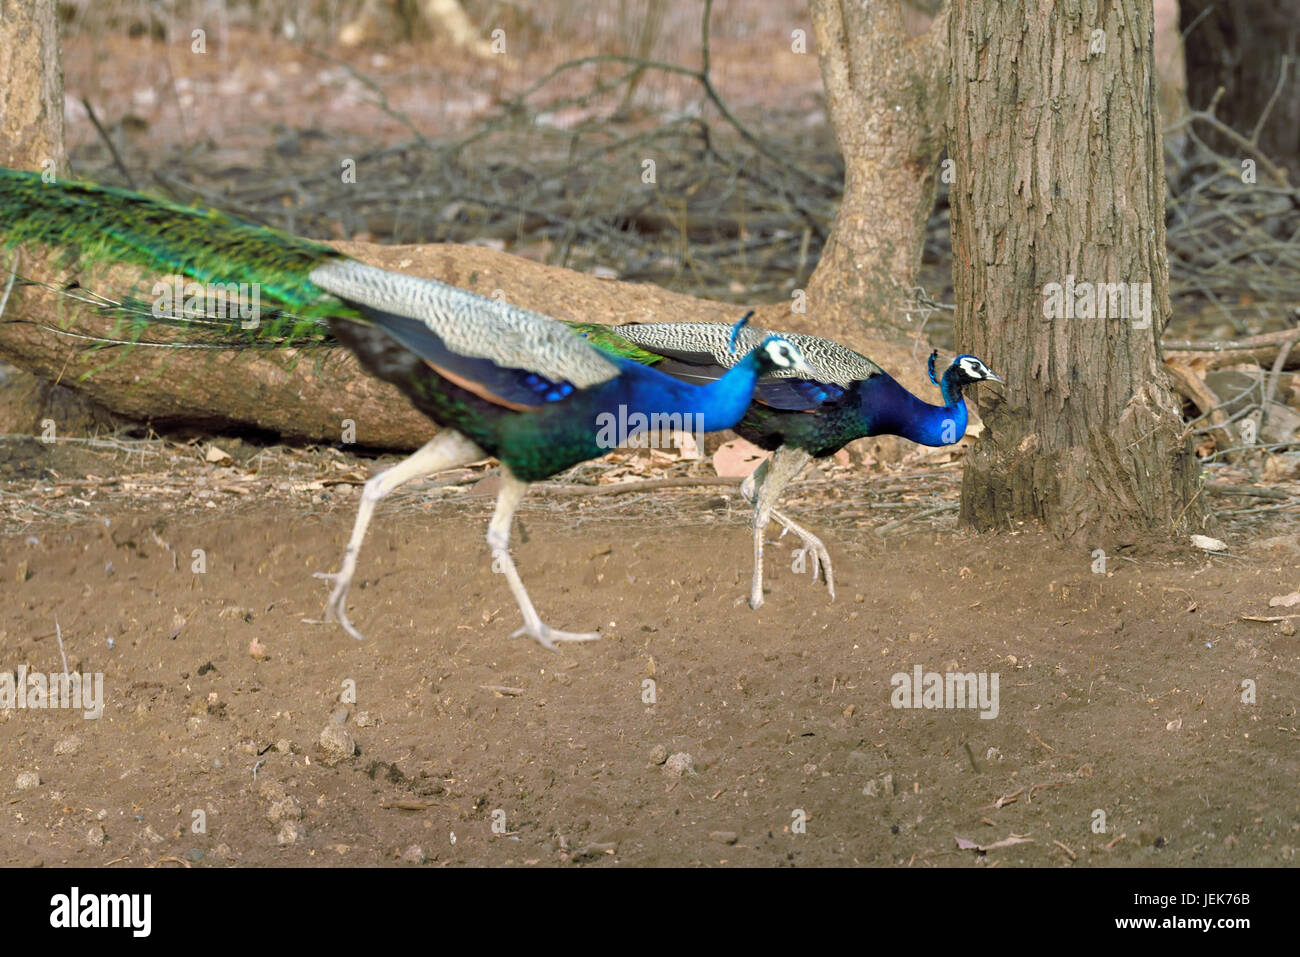 Peacock, parc national de GIR, dans le Gujarat, Inde, Asie Banque D'Images